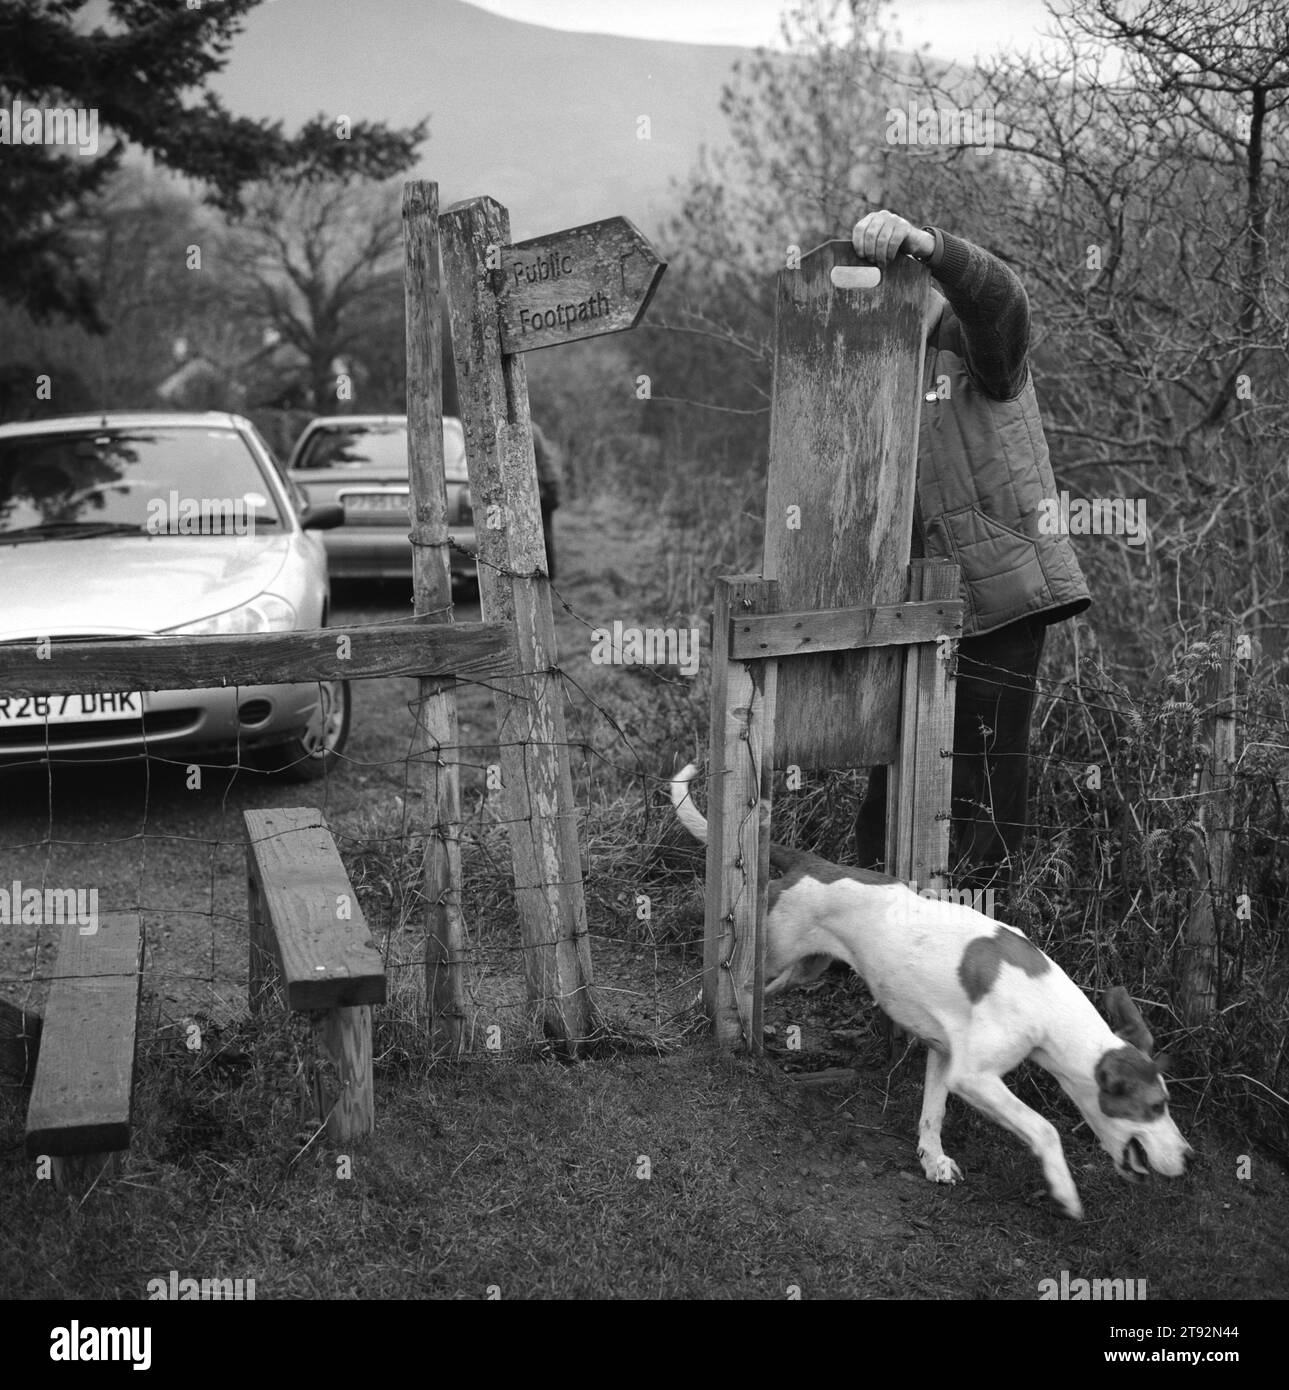 Fox Hunting UK, le Lake District les Blencathra Foxhounds. Un chien retrouve son chemin vers la meute. Il passe par une porte pour chien. Près de Braithwaite, Cumbria. 2002, années 2000 Angleterre HOMER SYKES Banque D'Images